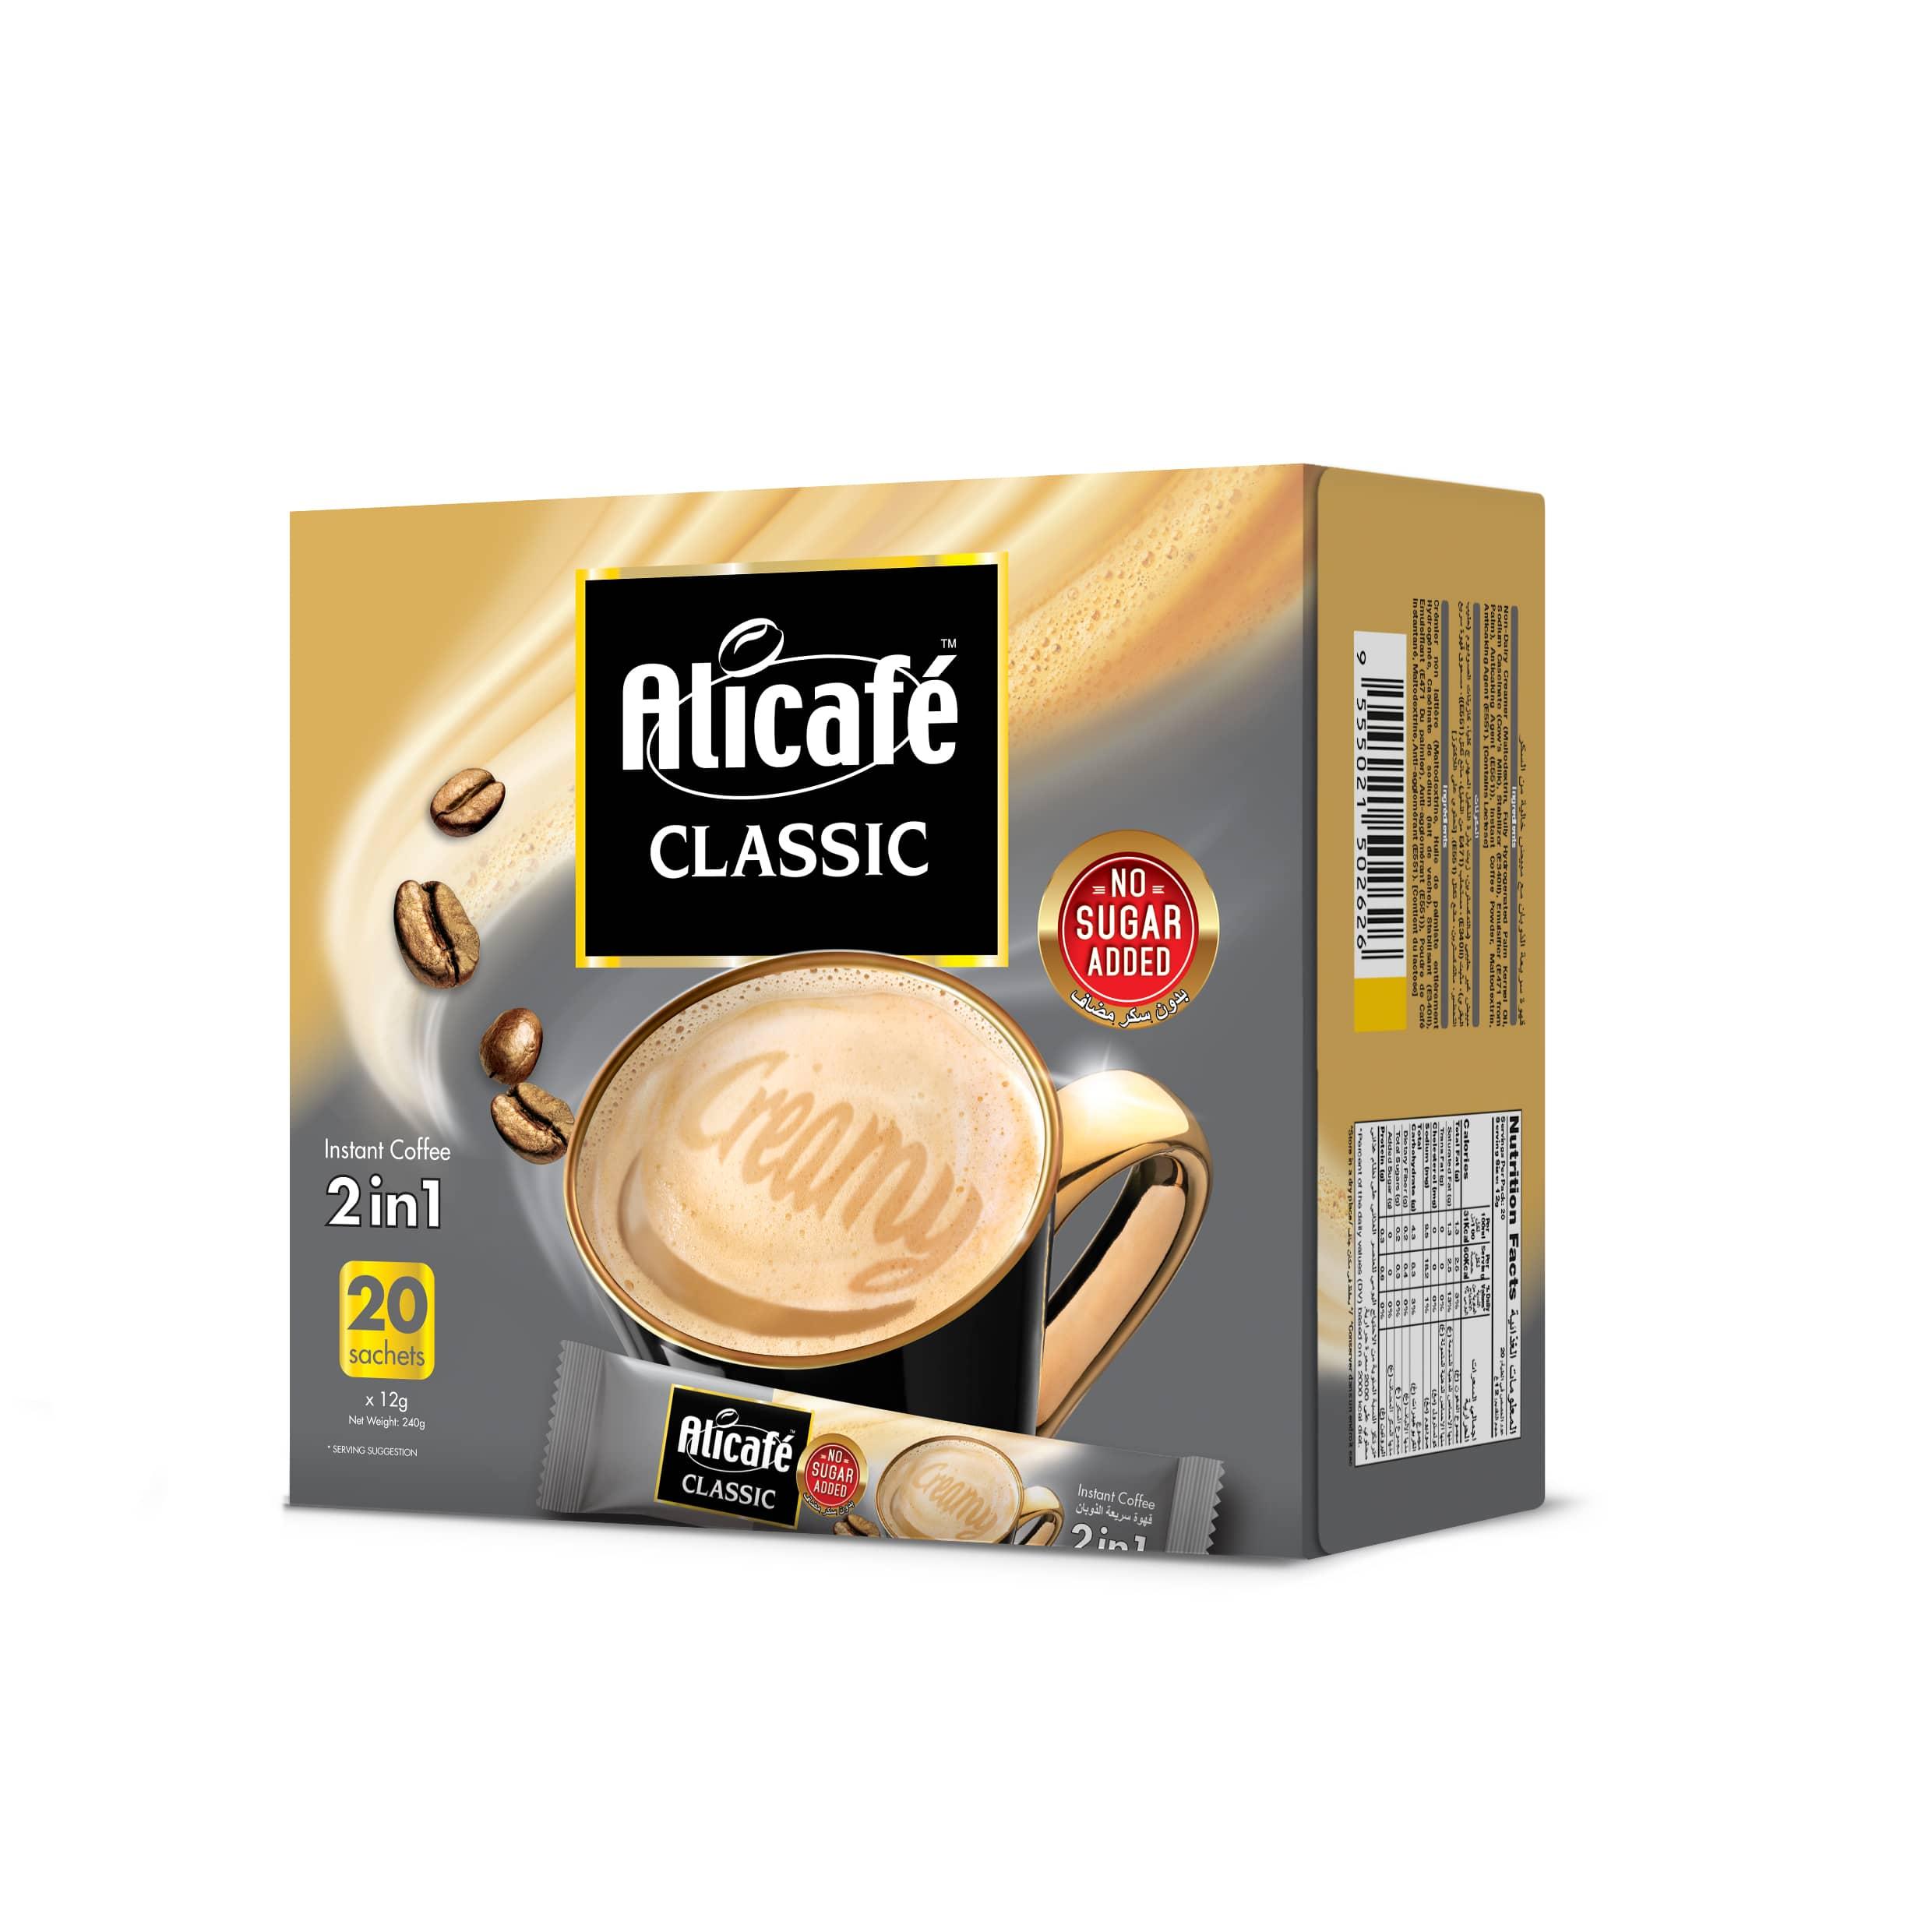 Alicafé Classic 2in1 Sugar Free